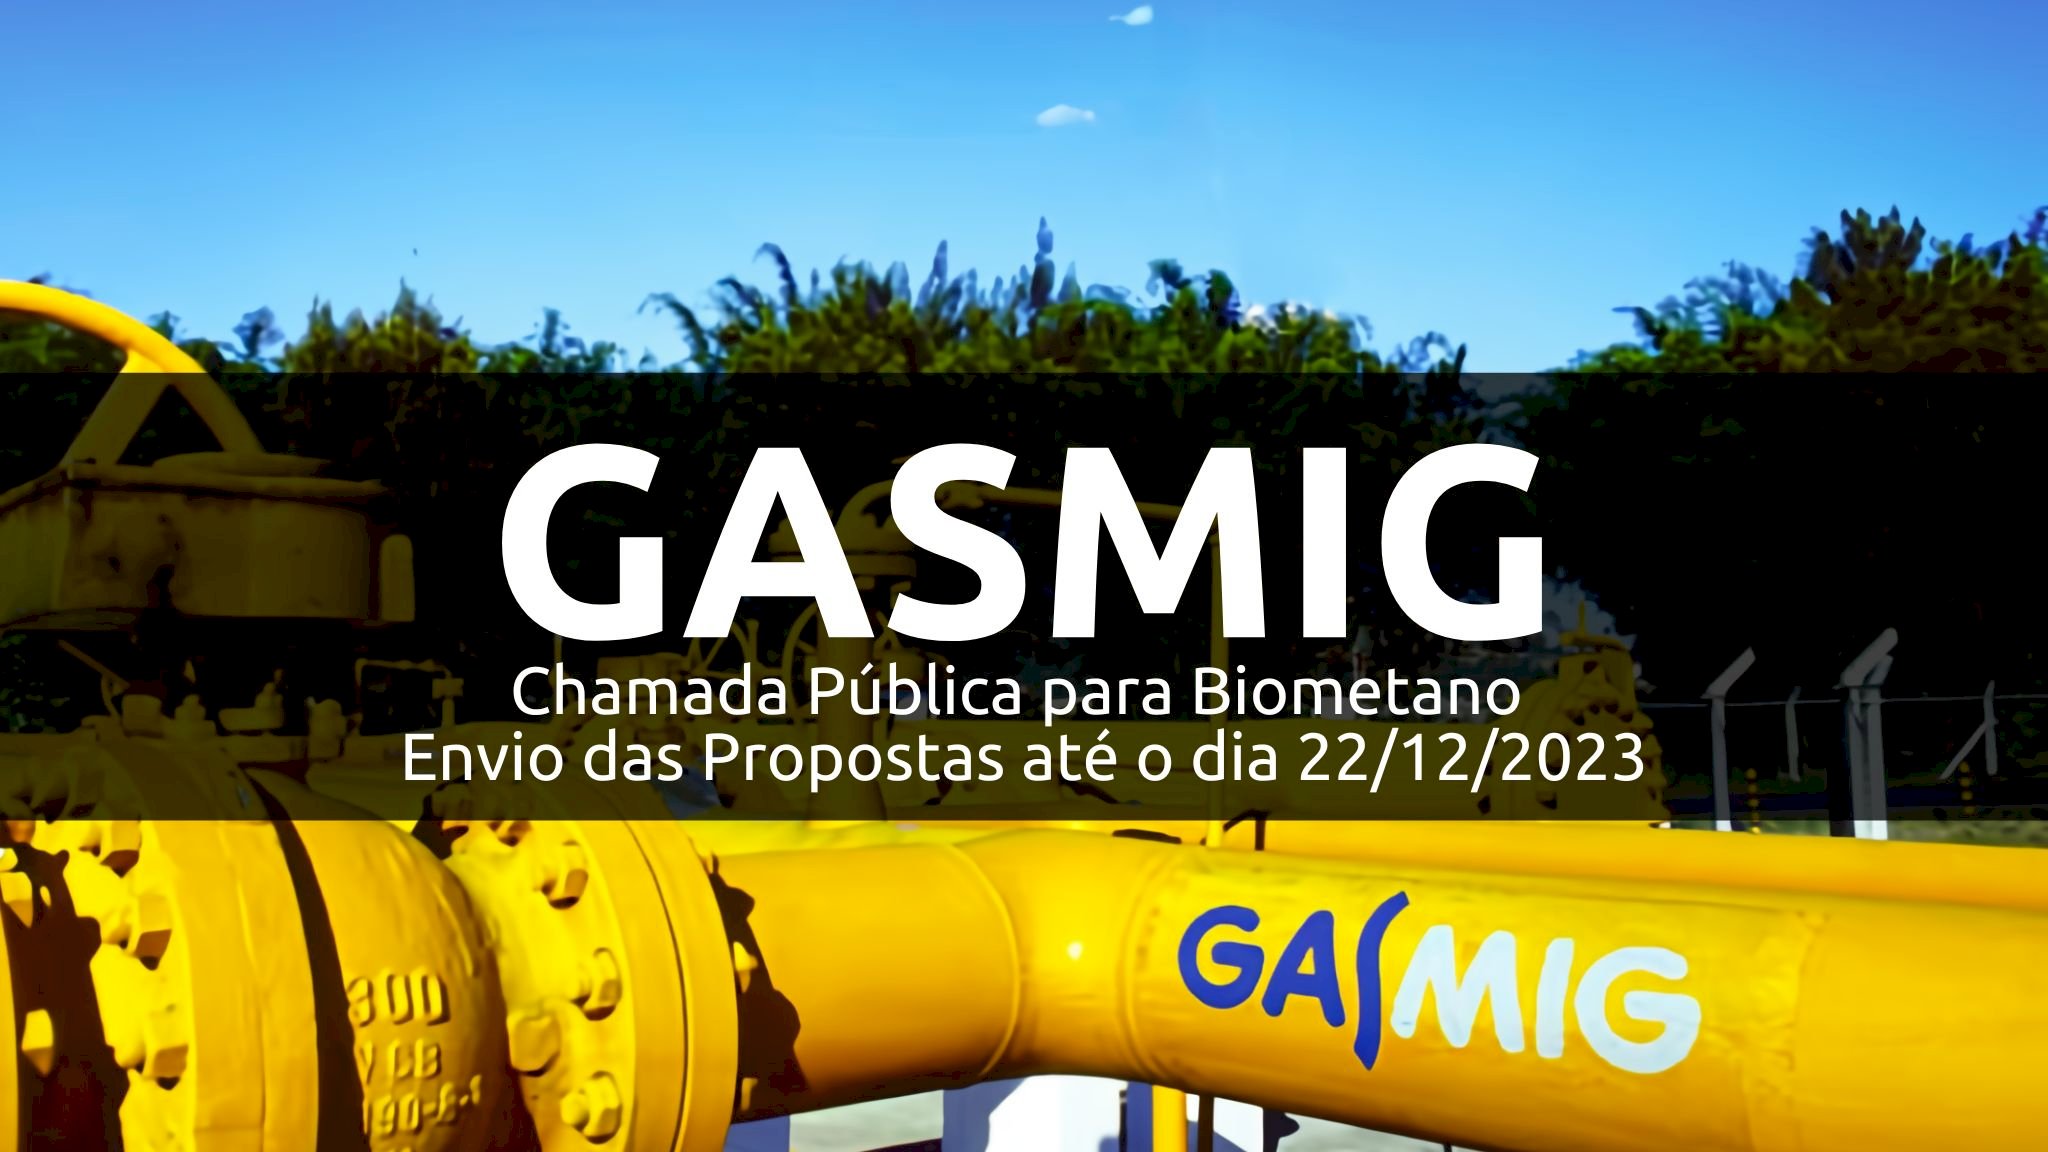 GASMIG - Chamada Pública para Biometano